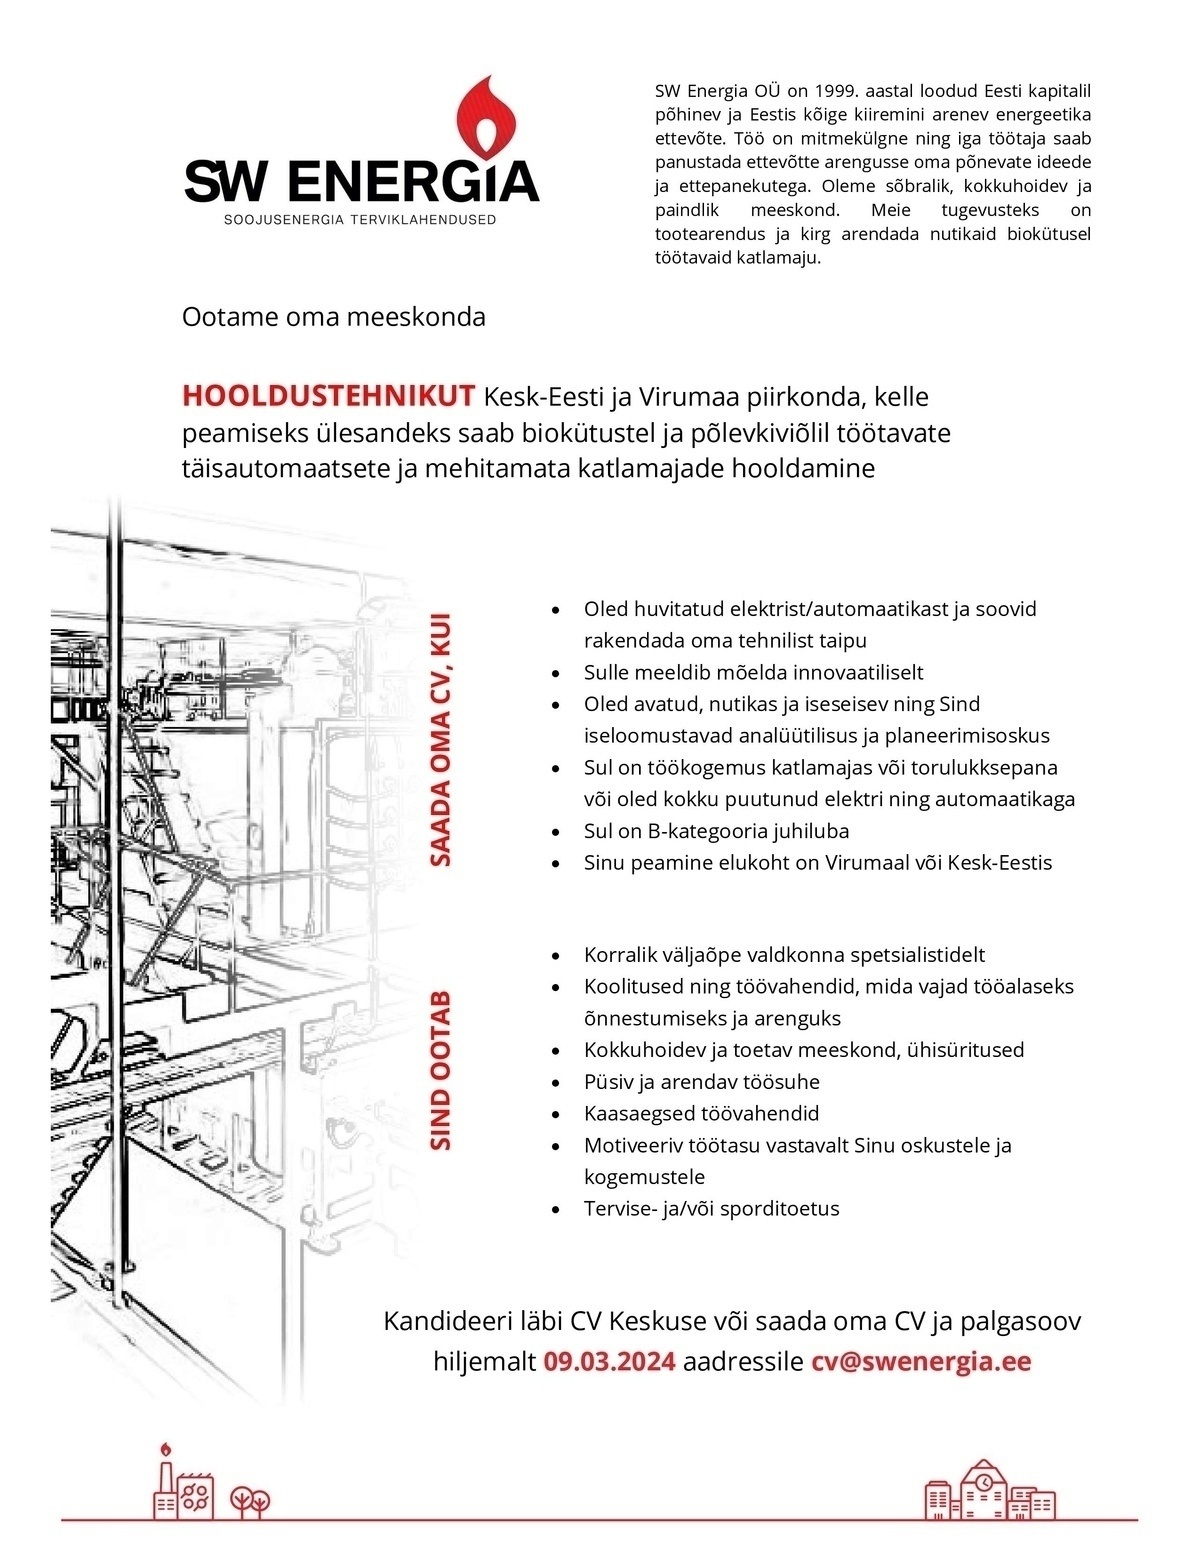 SW Energia OÜ Hooldustehnik Kesk-Eesti / Virumaa piirkonnas